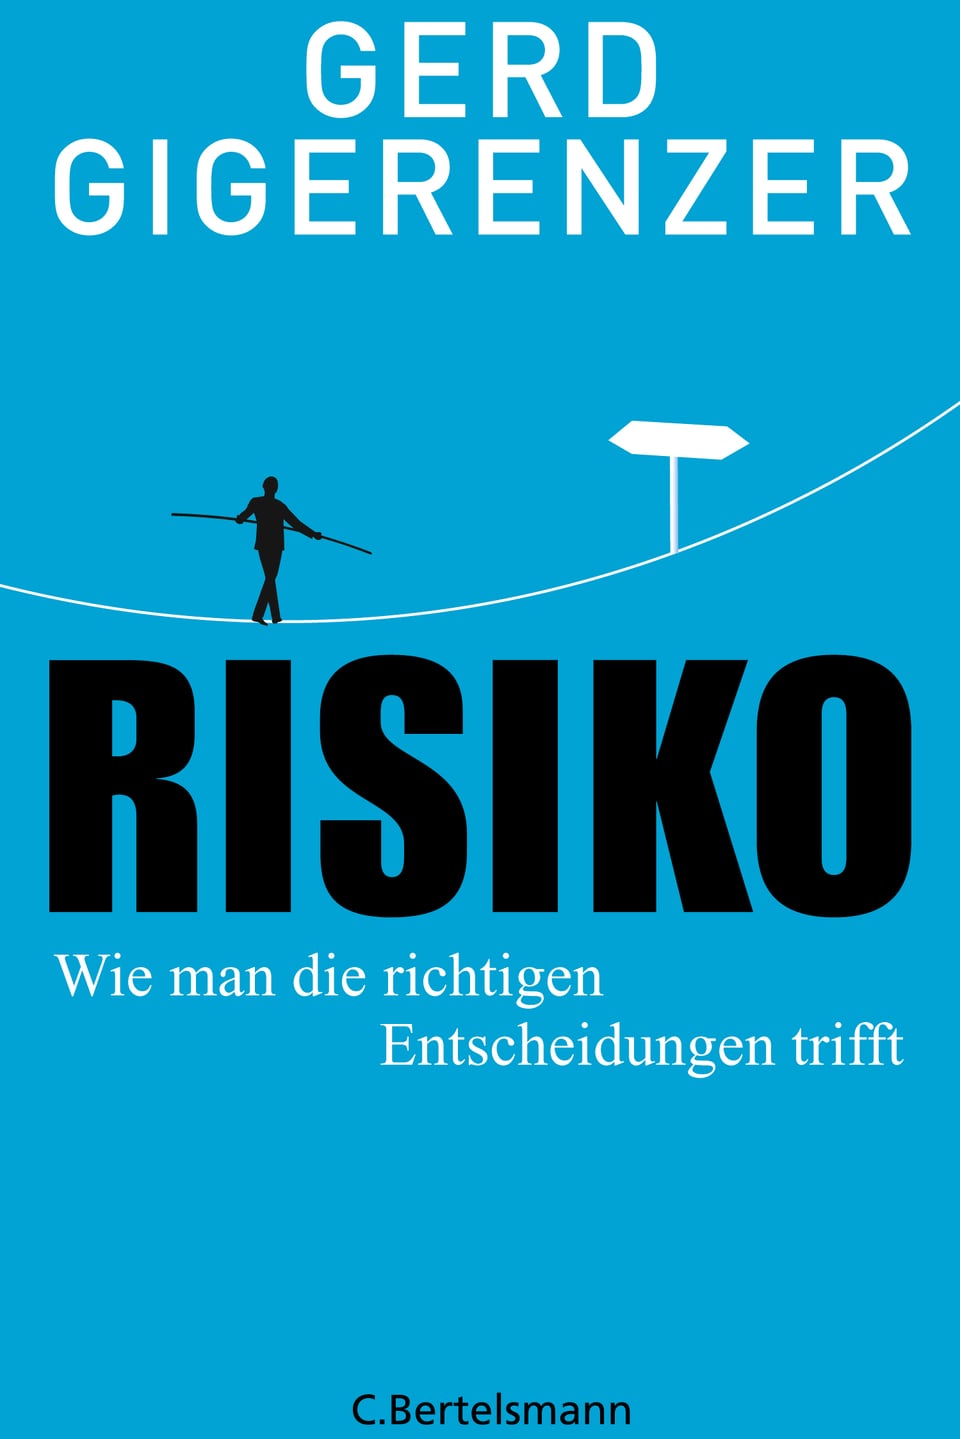 Titel des Buches mit dem Namen Risiko, Wie man die richtigen Entscheidungen trifft.